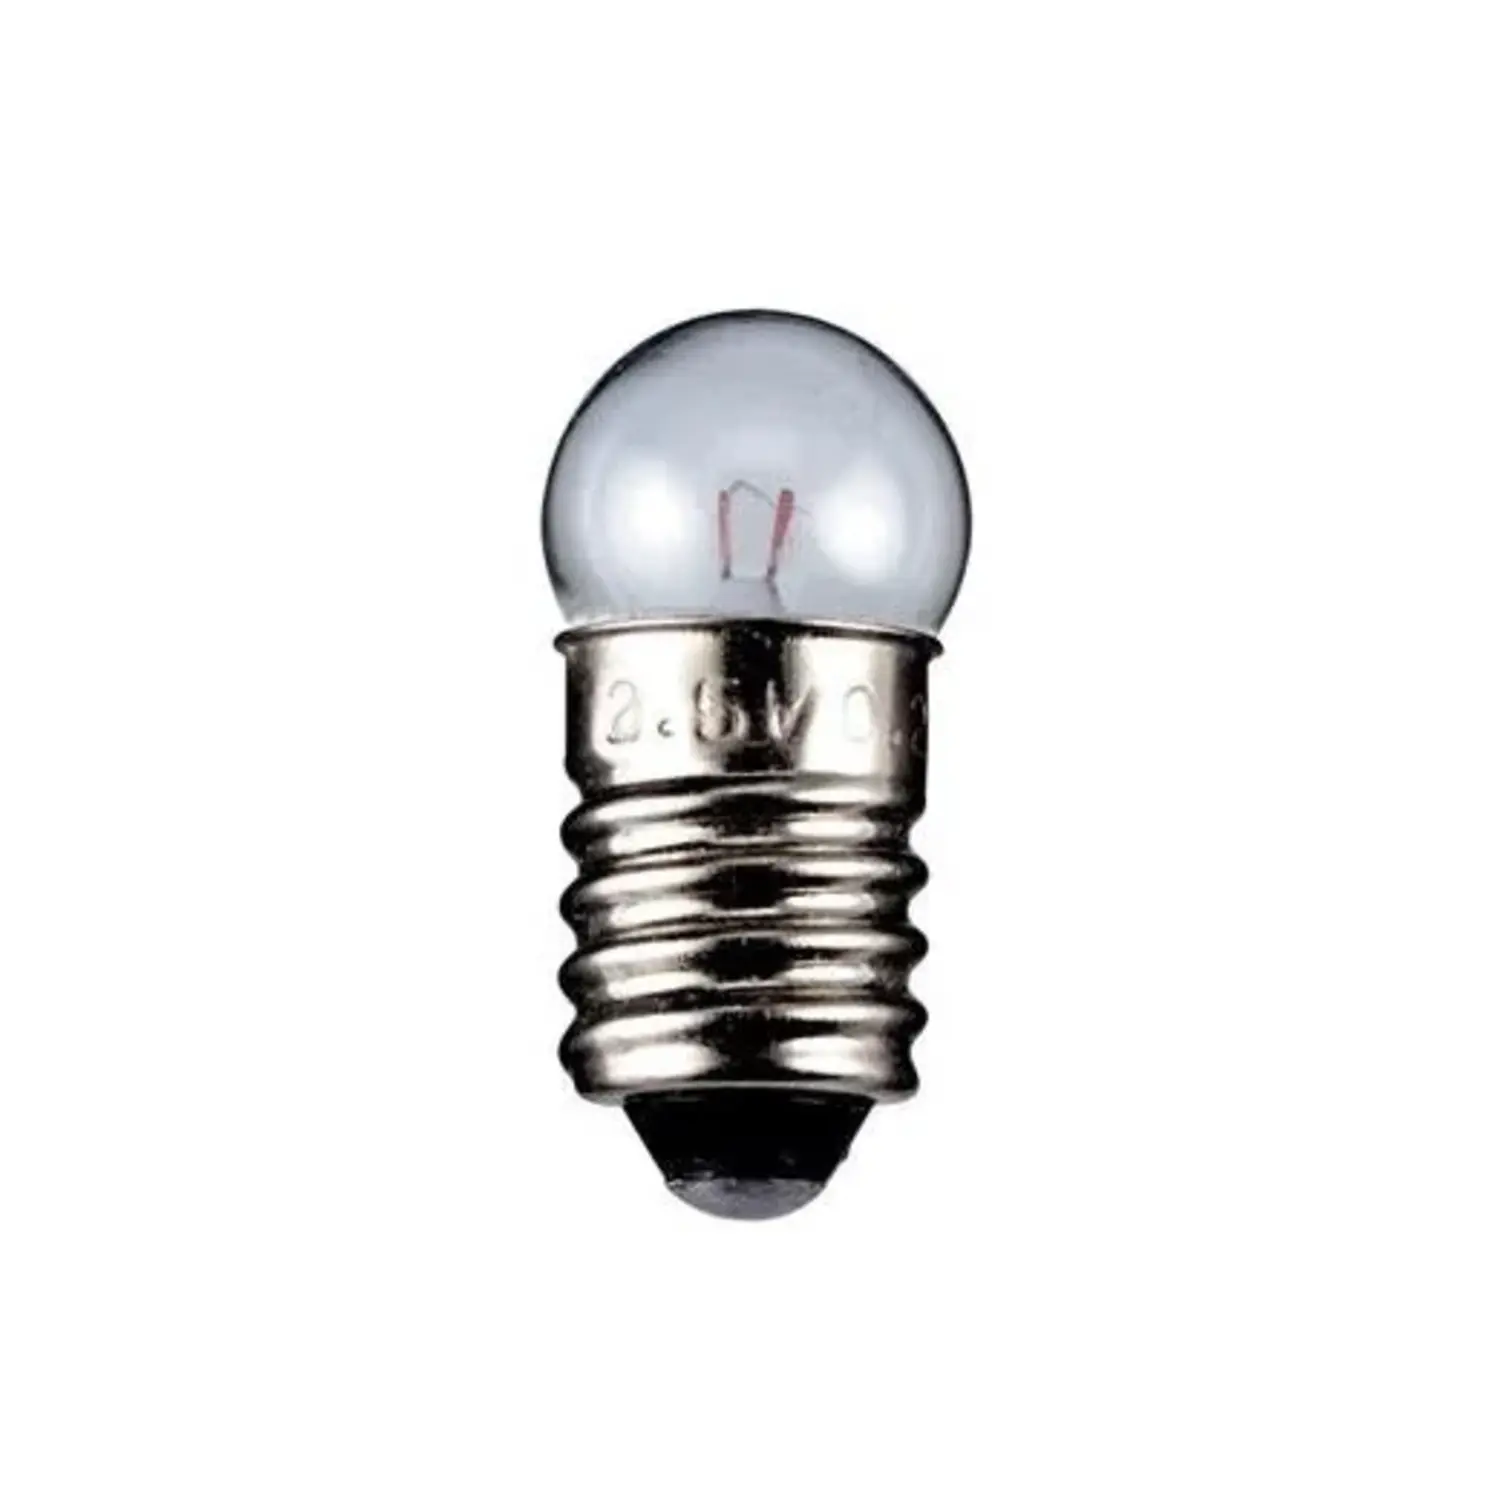 immagine del prodotto lampadina globulare chiara trasparente E10 CE 6 volt 2,40 watt wnt 9581